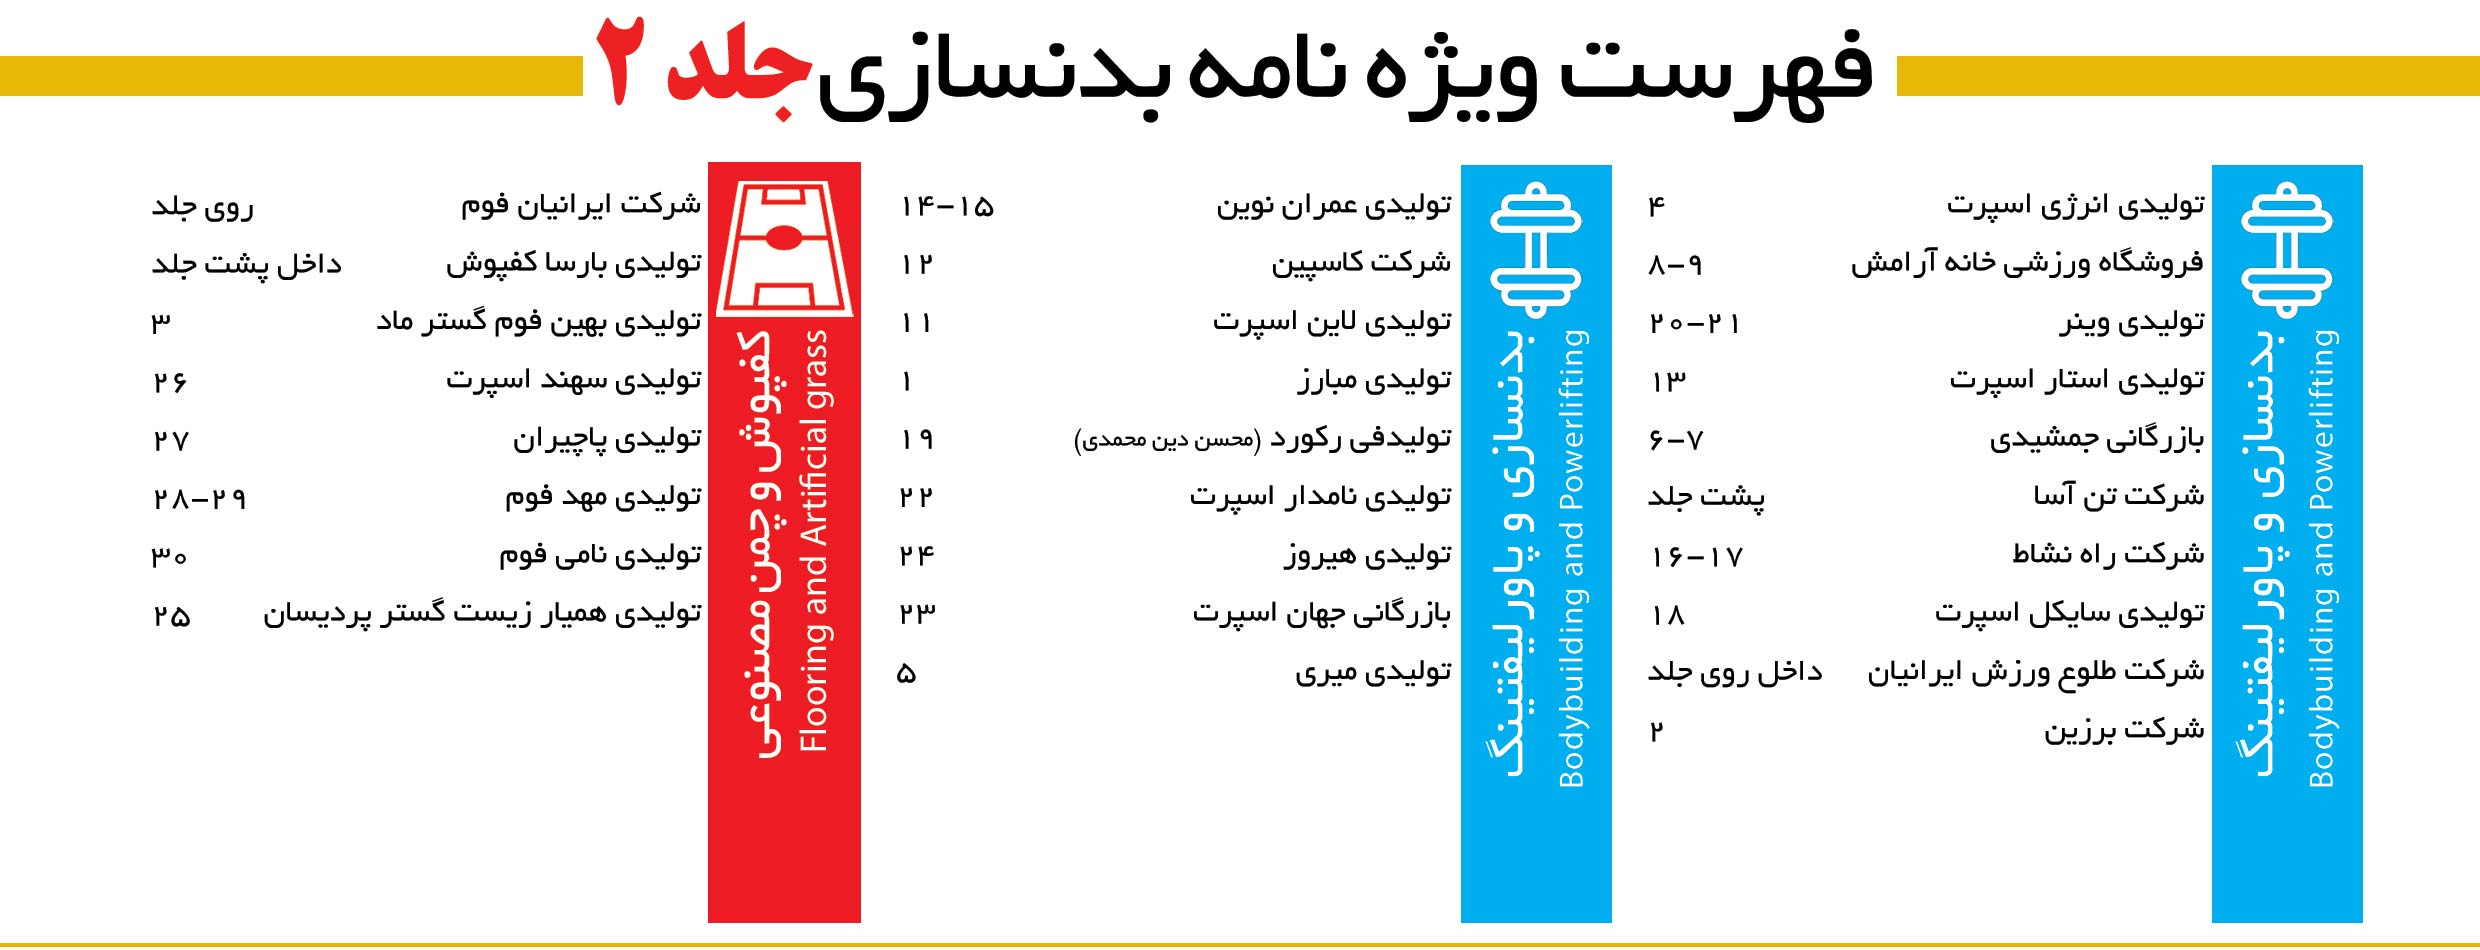 فهرست جلد 2: مجله بدنسازی مهر پارسیان- اردیبهشت شماره 156